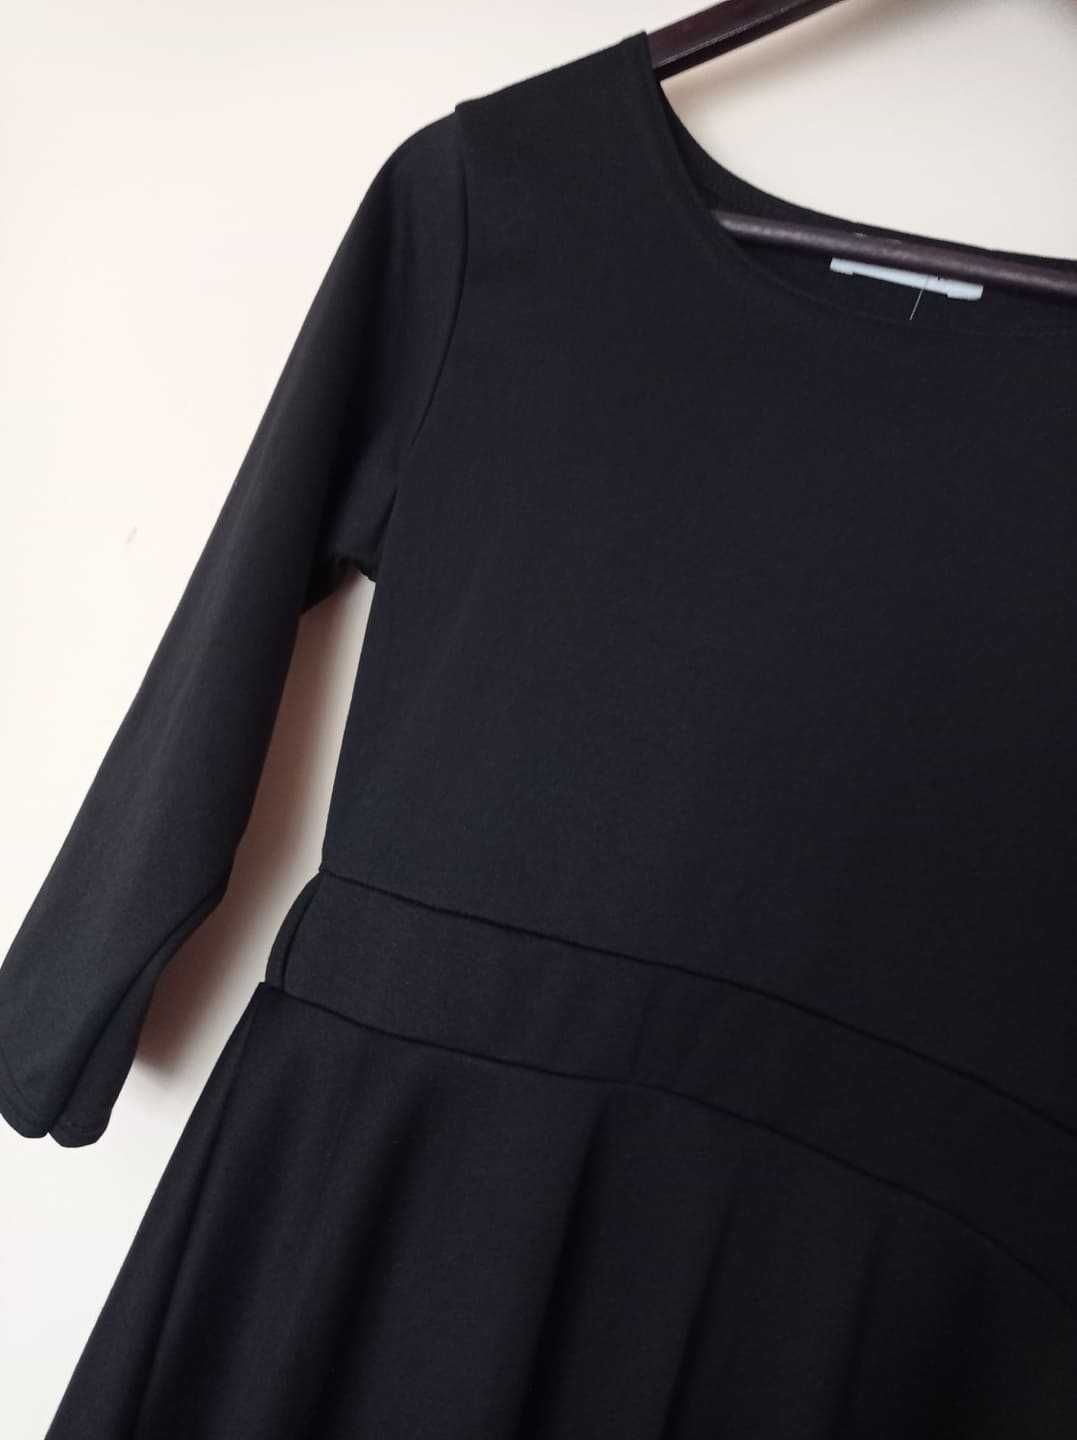 Nowa, czarna sukienka